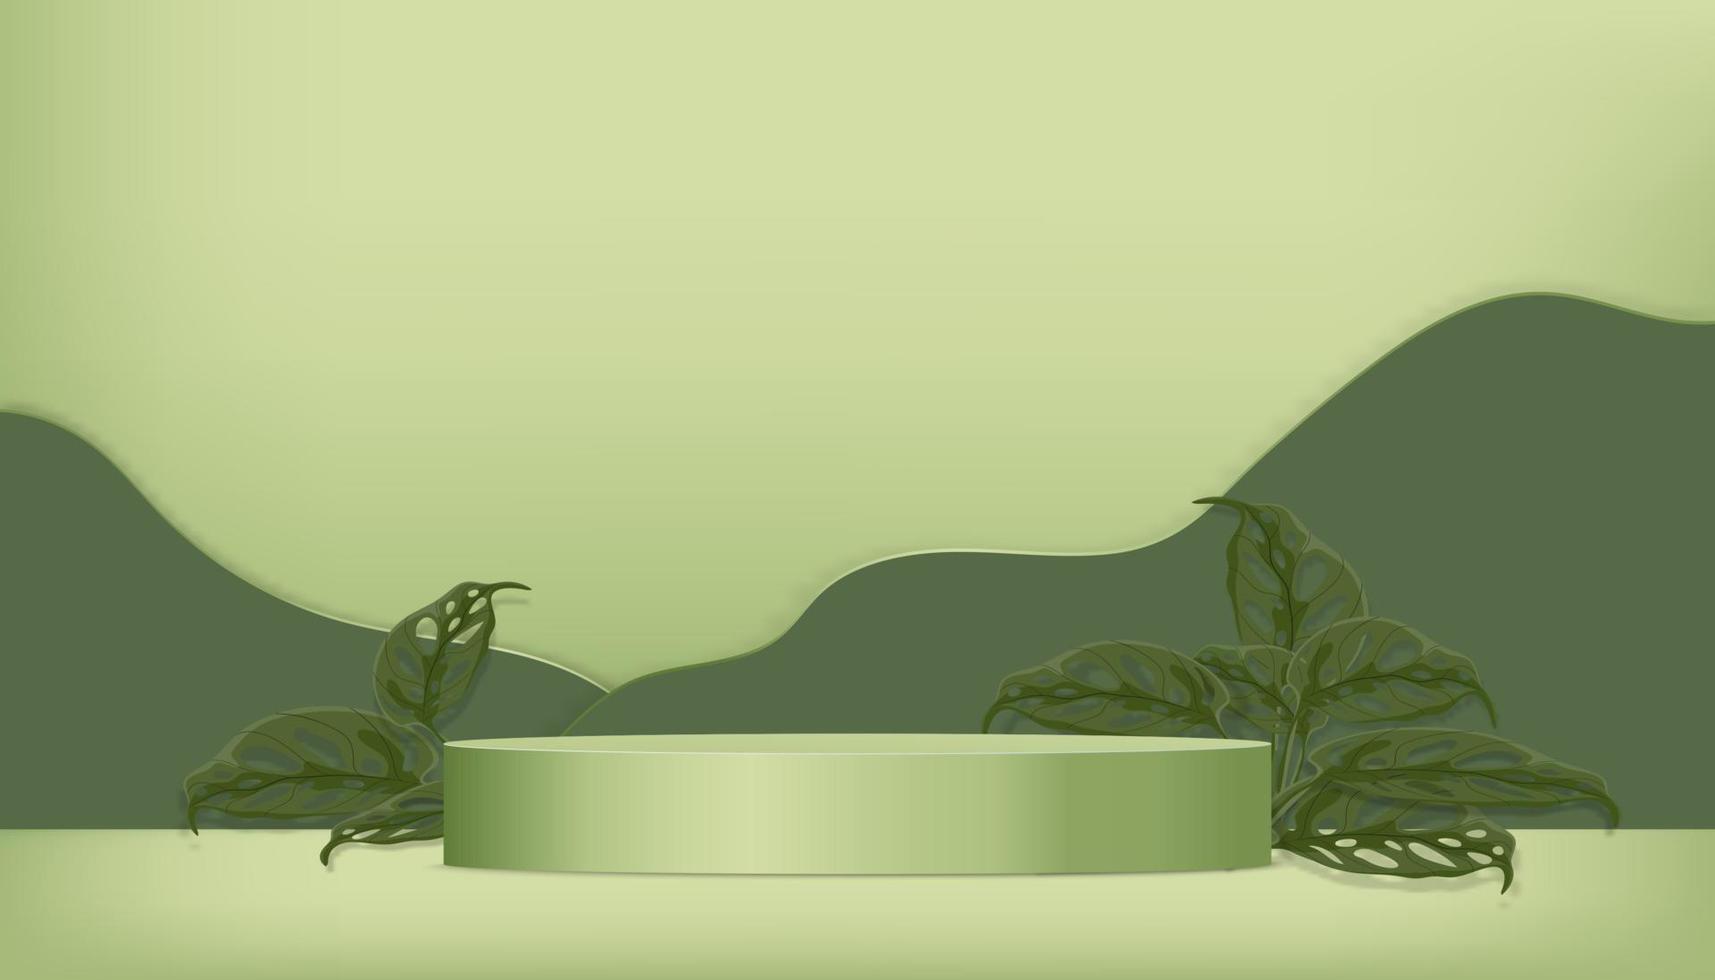 sala studio con podio cilindrico 3d, foglie tropicali su sfondo verde parete, illustrazione vettoriale banner sullo sfondo minimo per la presentazione del prodotto, promozione, mockup su saldi primaverili o estivi